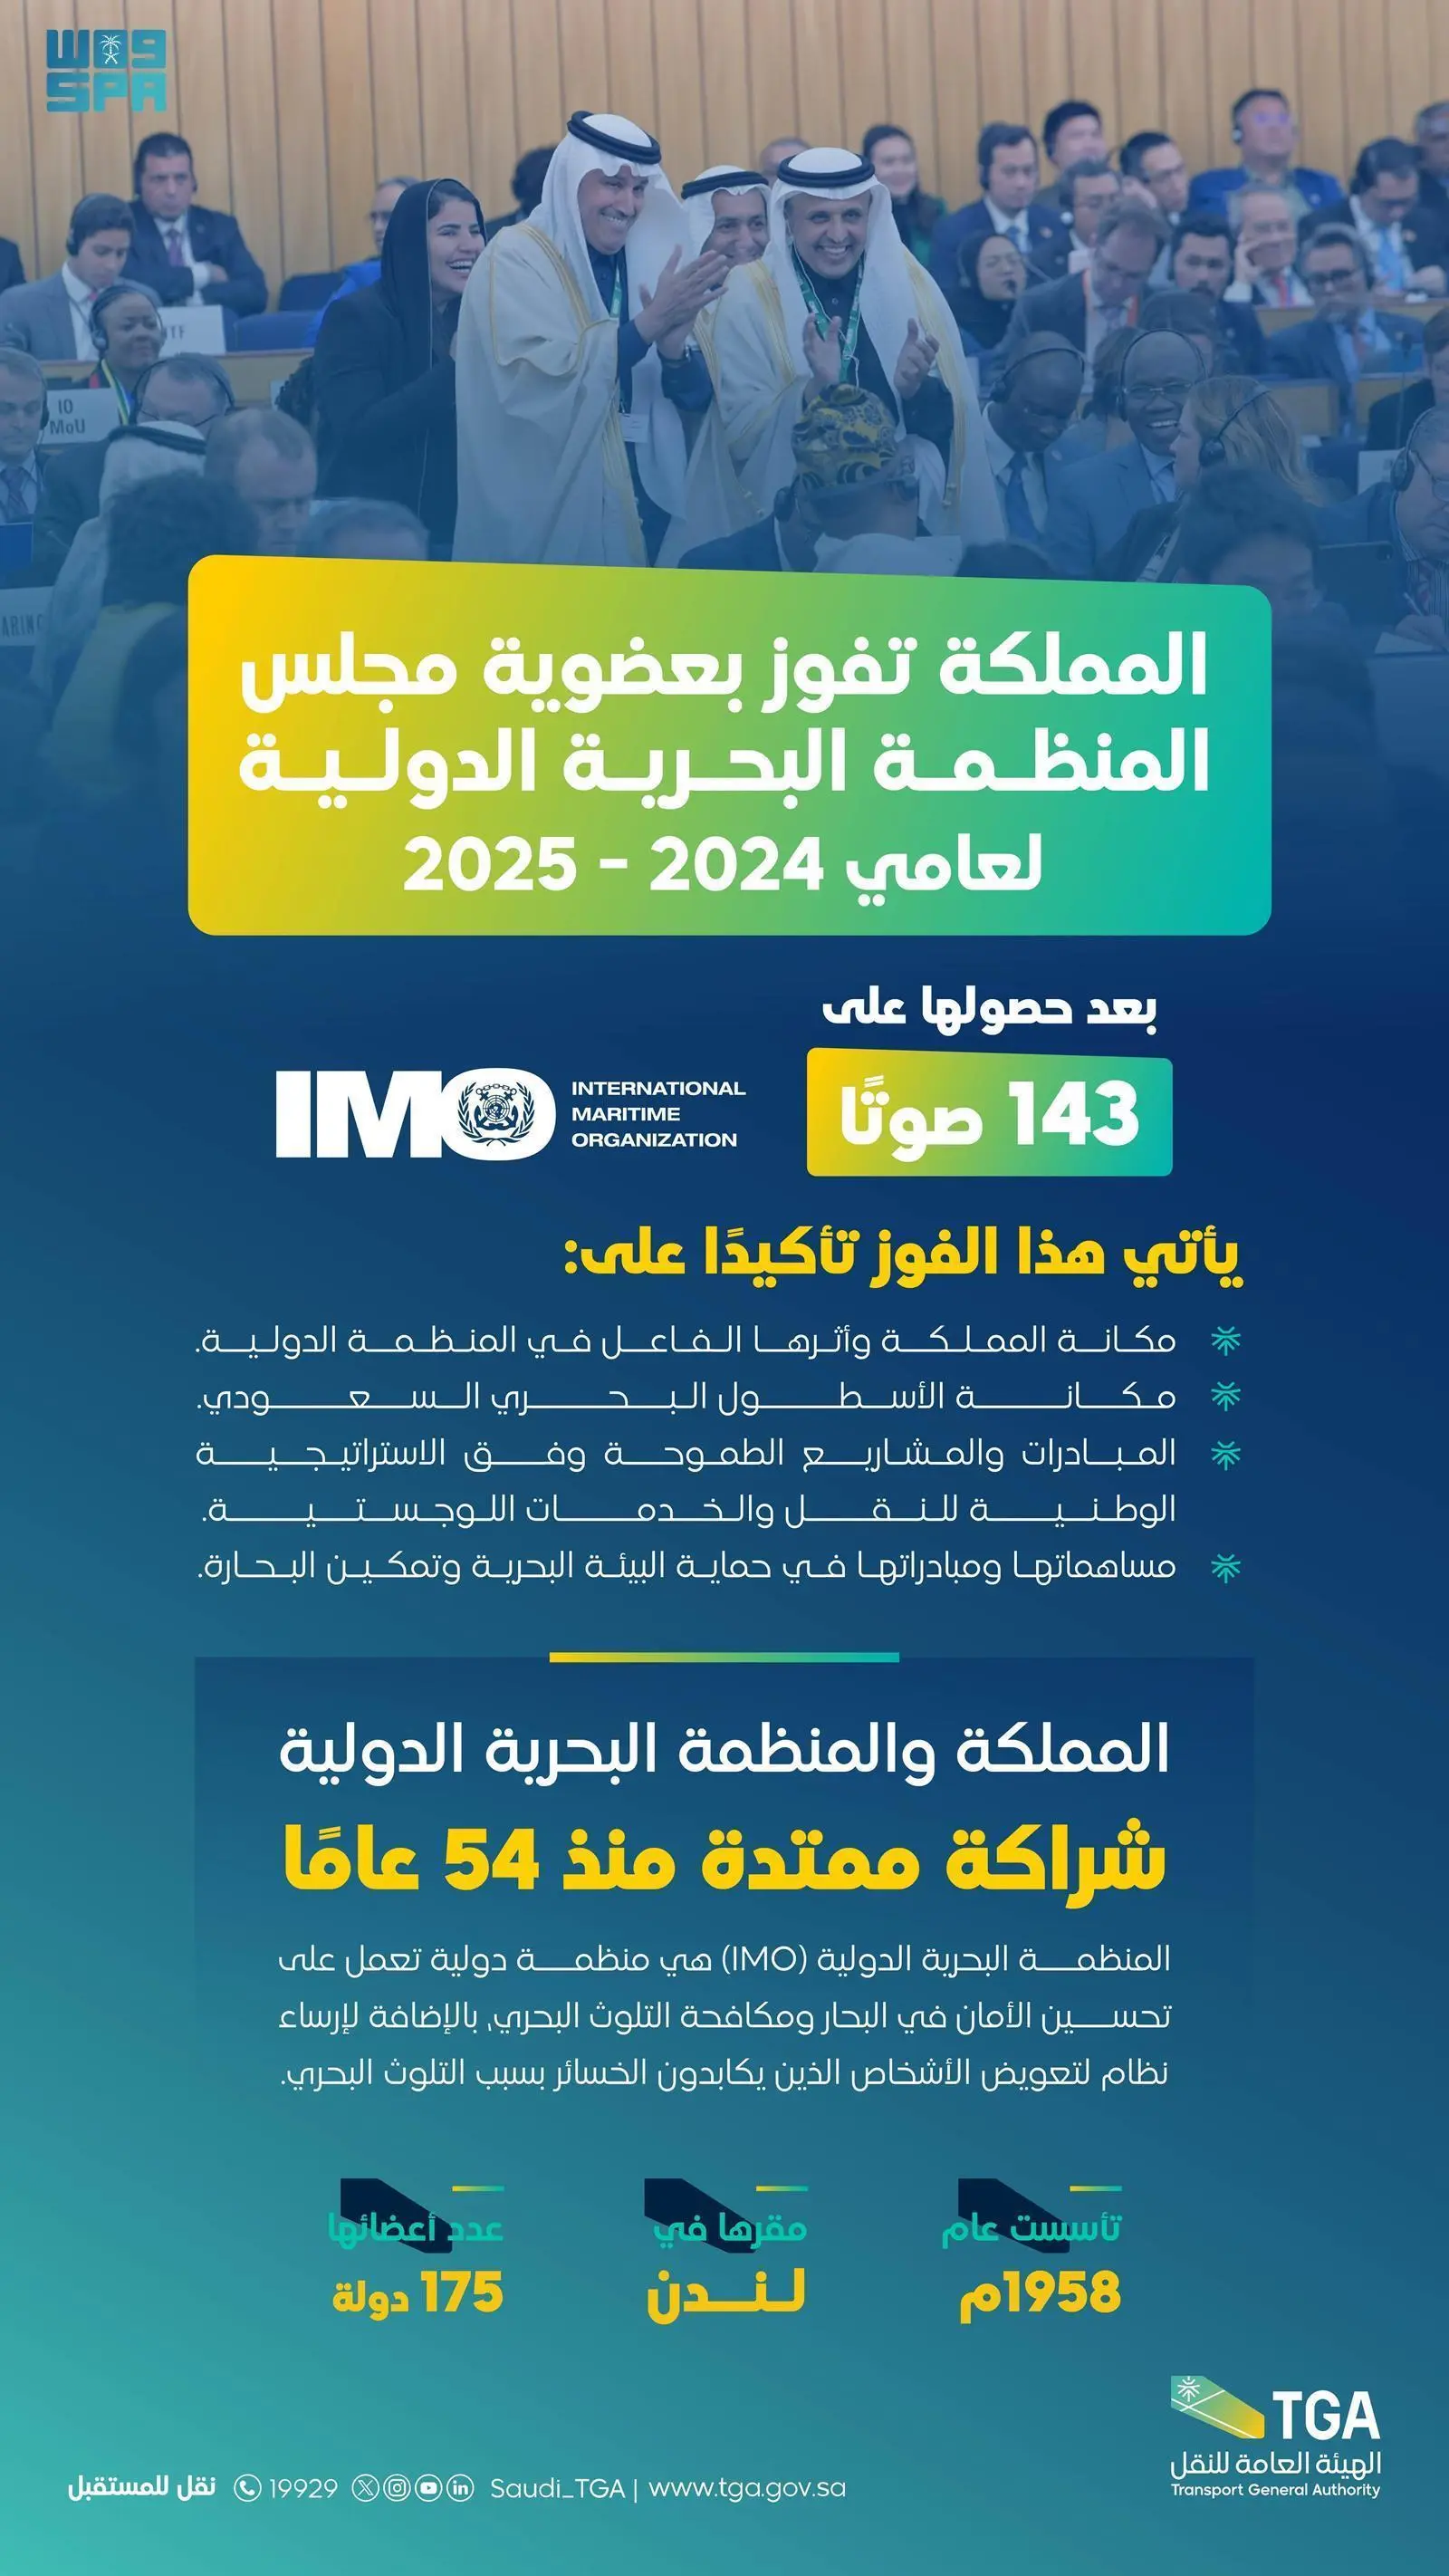 المملكة تفوز بعضوية مجلس المنظمة البحرية الدولية IMO لعامي 2025-2024